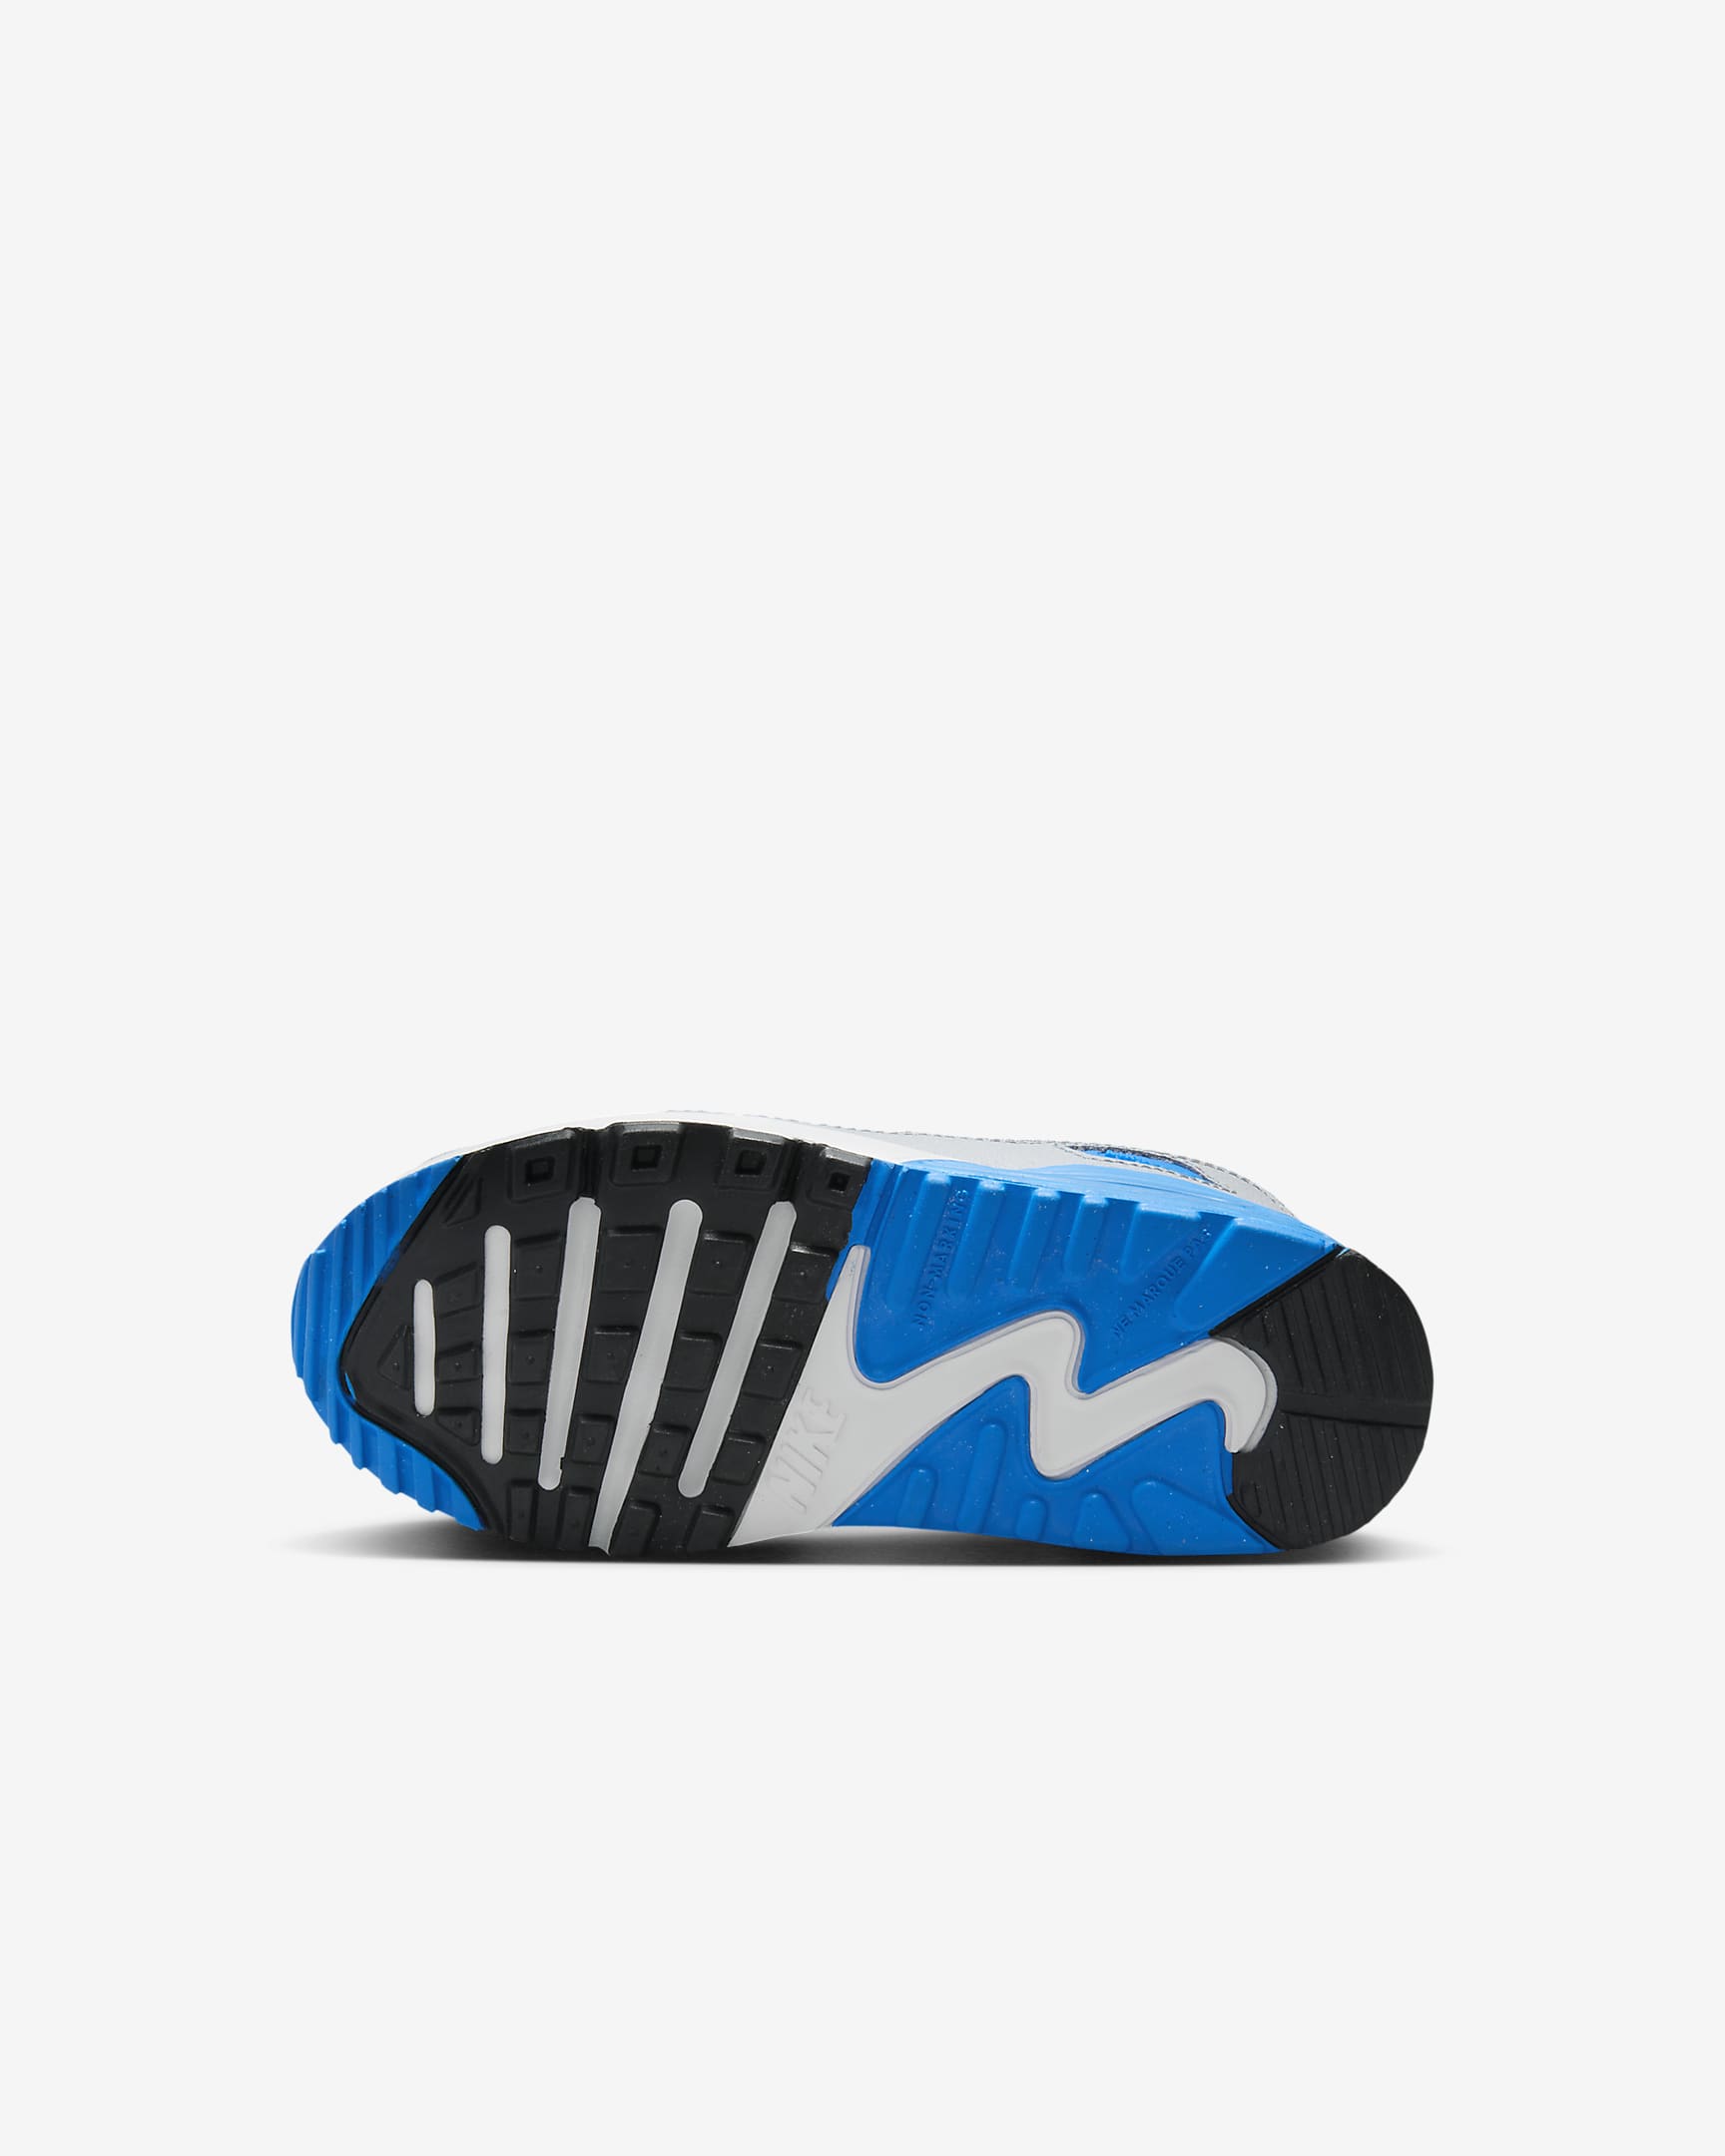 Nike Air Max 90 LTR Zapatillas - Niño/a pequeño/a - Blanco/Photo Blue/Pure Platinum/Negro